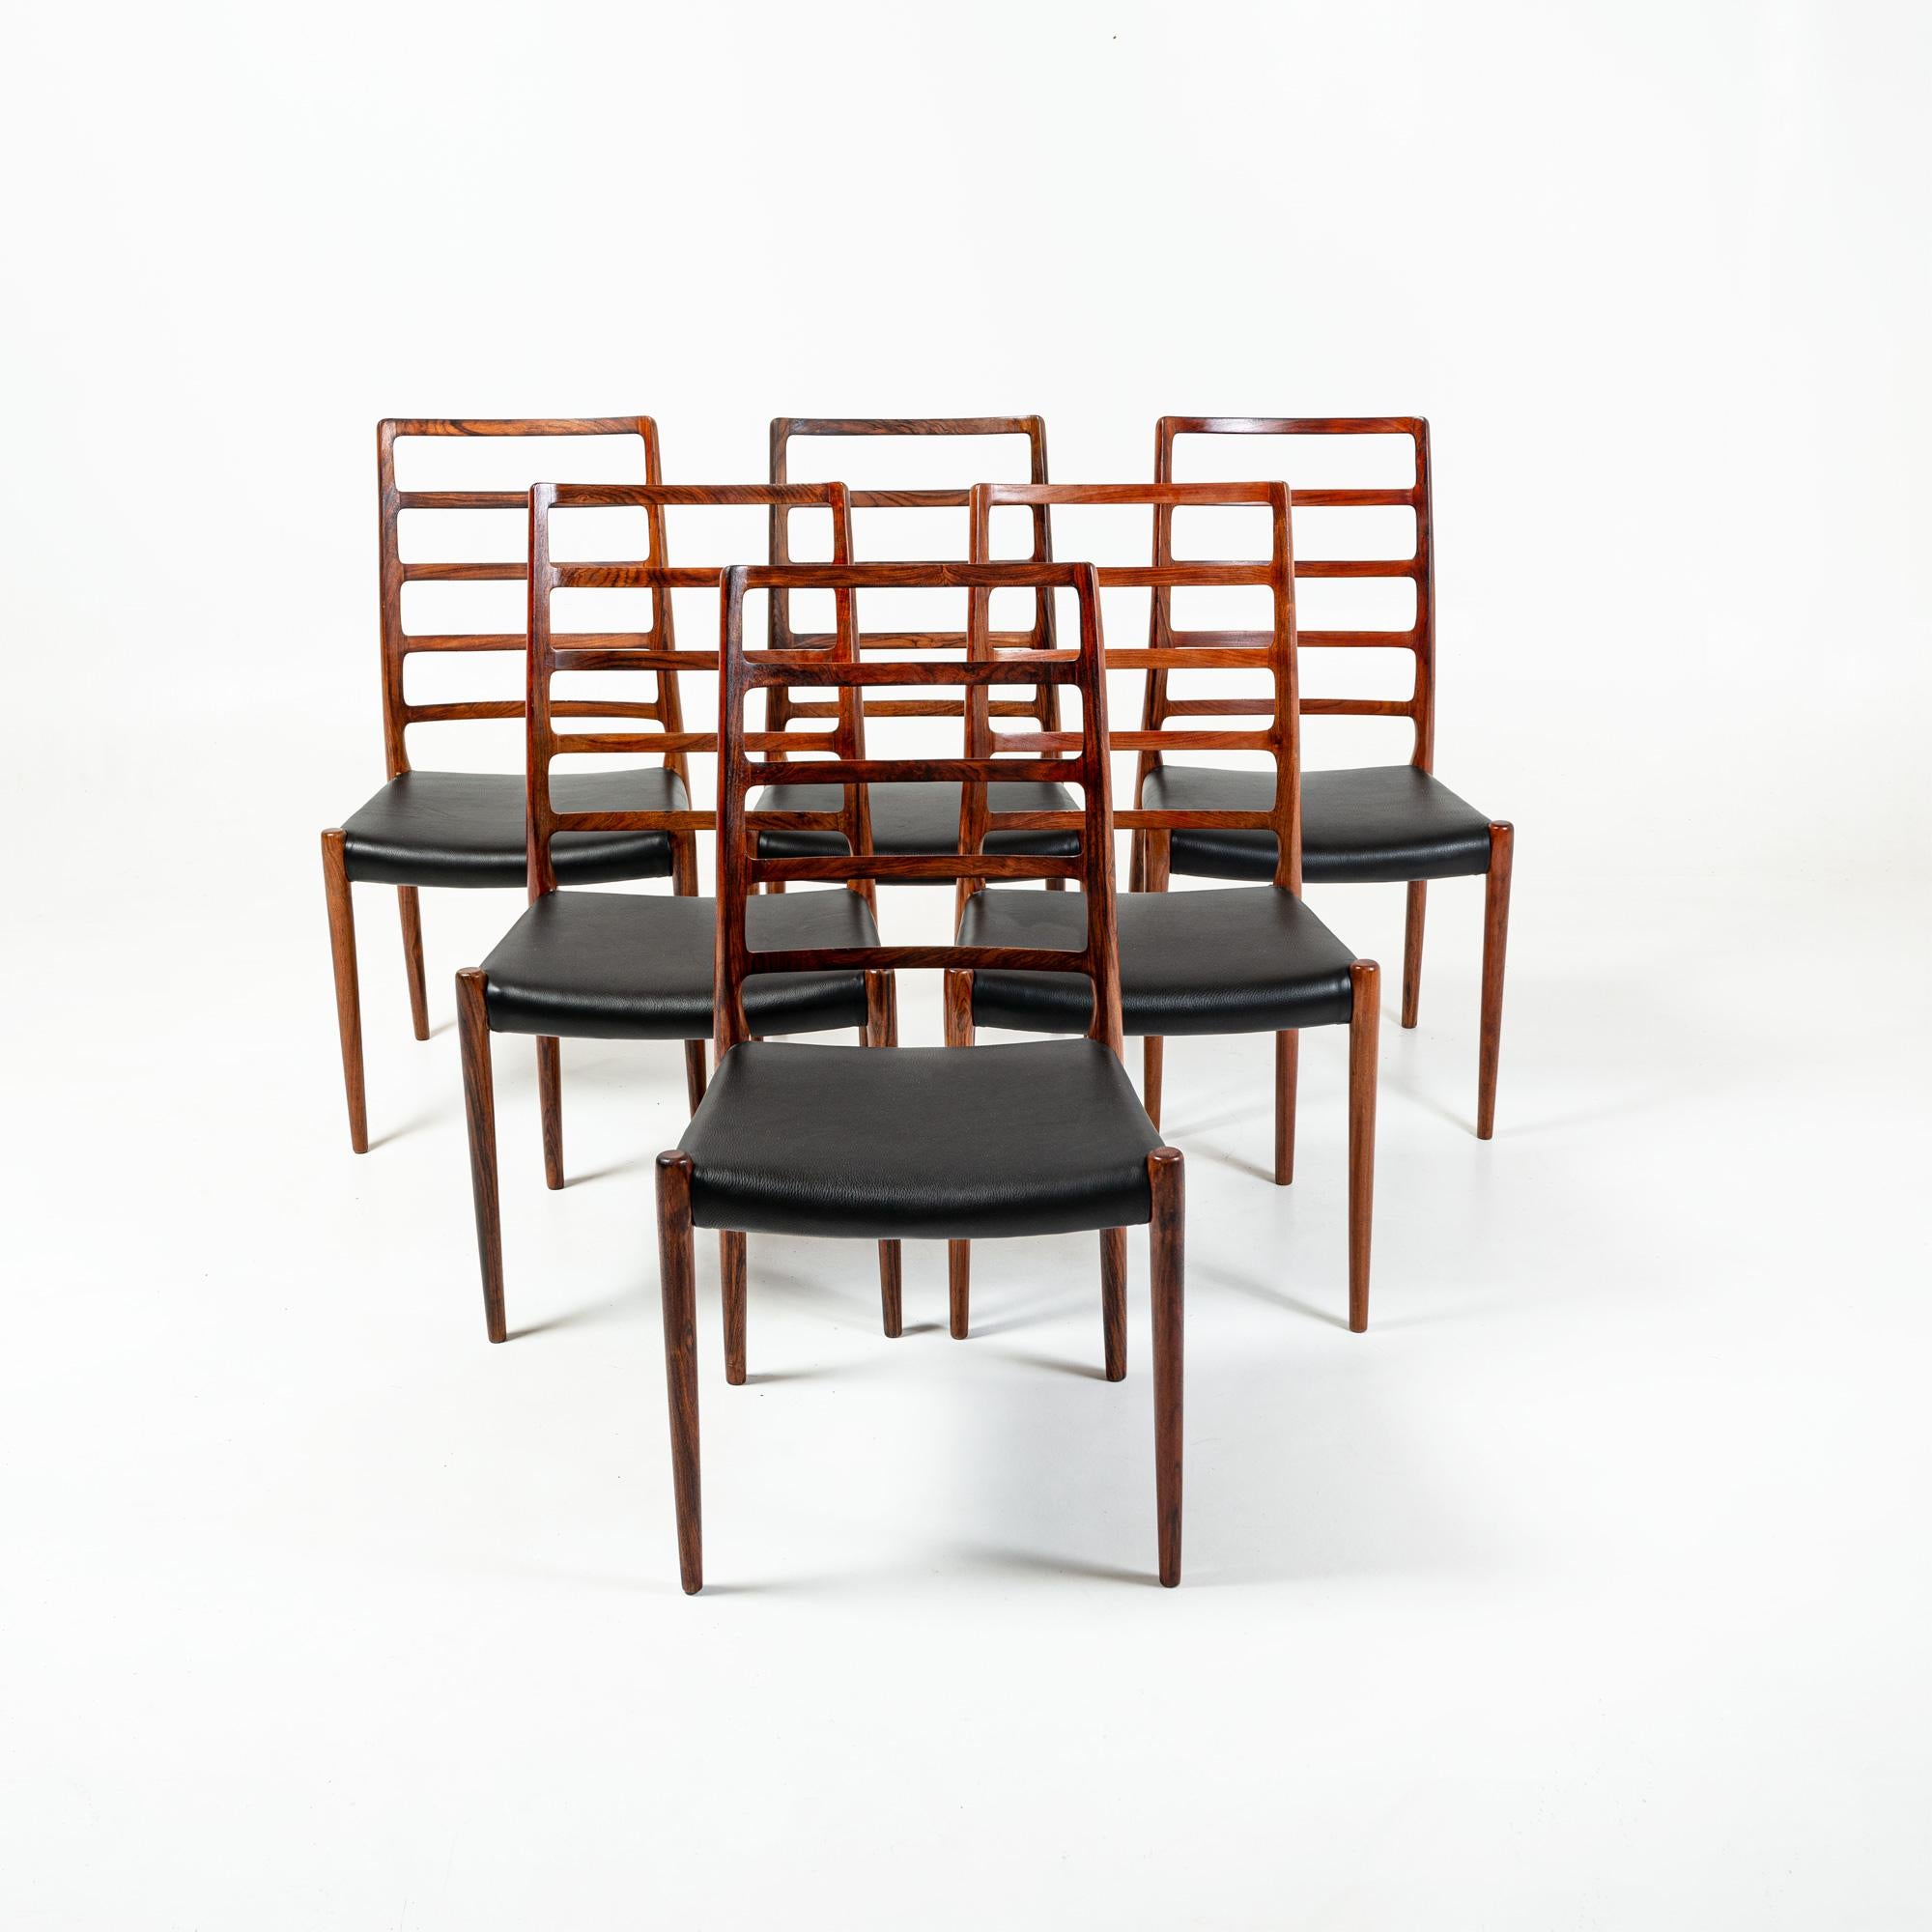 Seltener und ikonischer Satz von 6 Esszimmerstühlen aus Palisanderholz, entworfen von Niels Otto Moller für die JL Møller Møbelfabrik im Jahr 1954. Das Set wurde komplett restauriert und mit neuen schwarzen Ledersitzen ausgestattet.